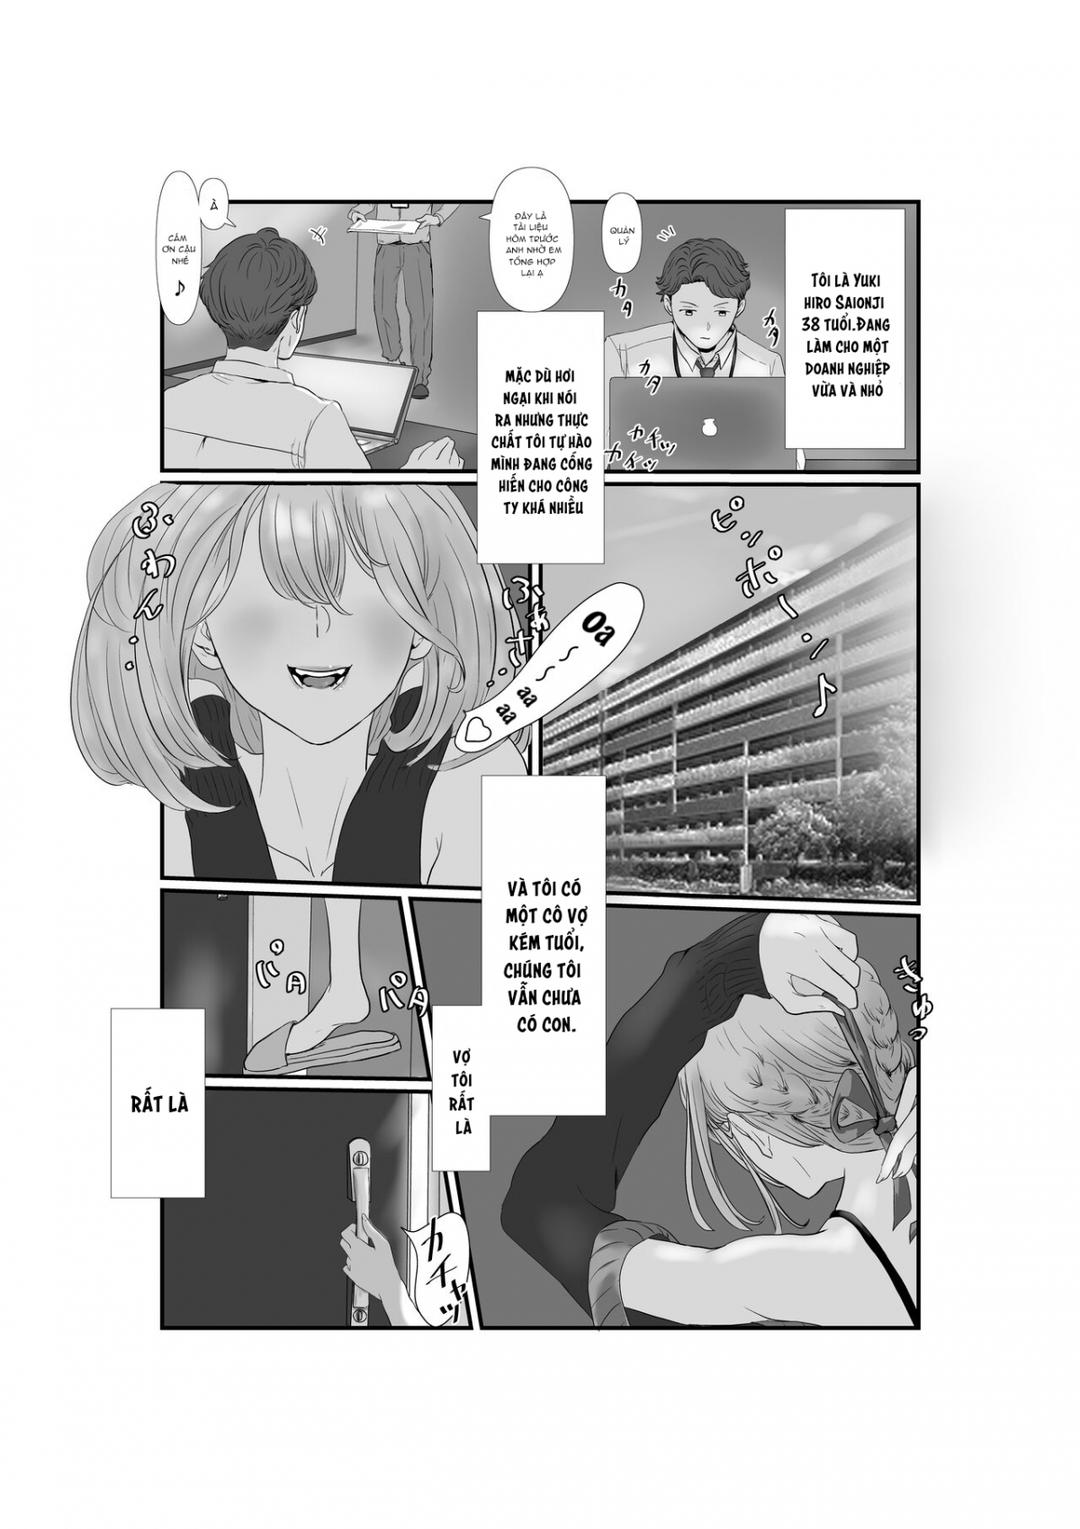 Tsuma wa NTR reta gatte iru Chương 1 Trang 5